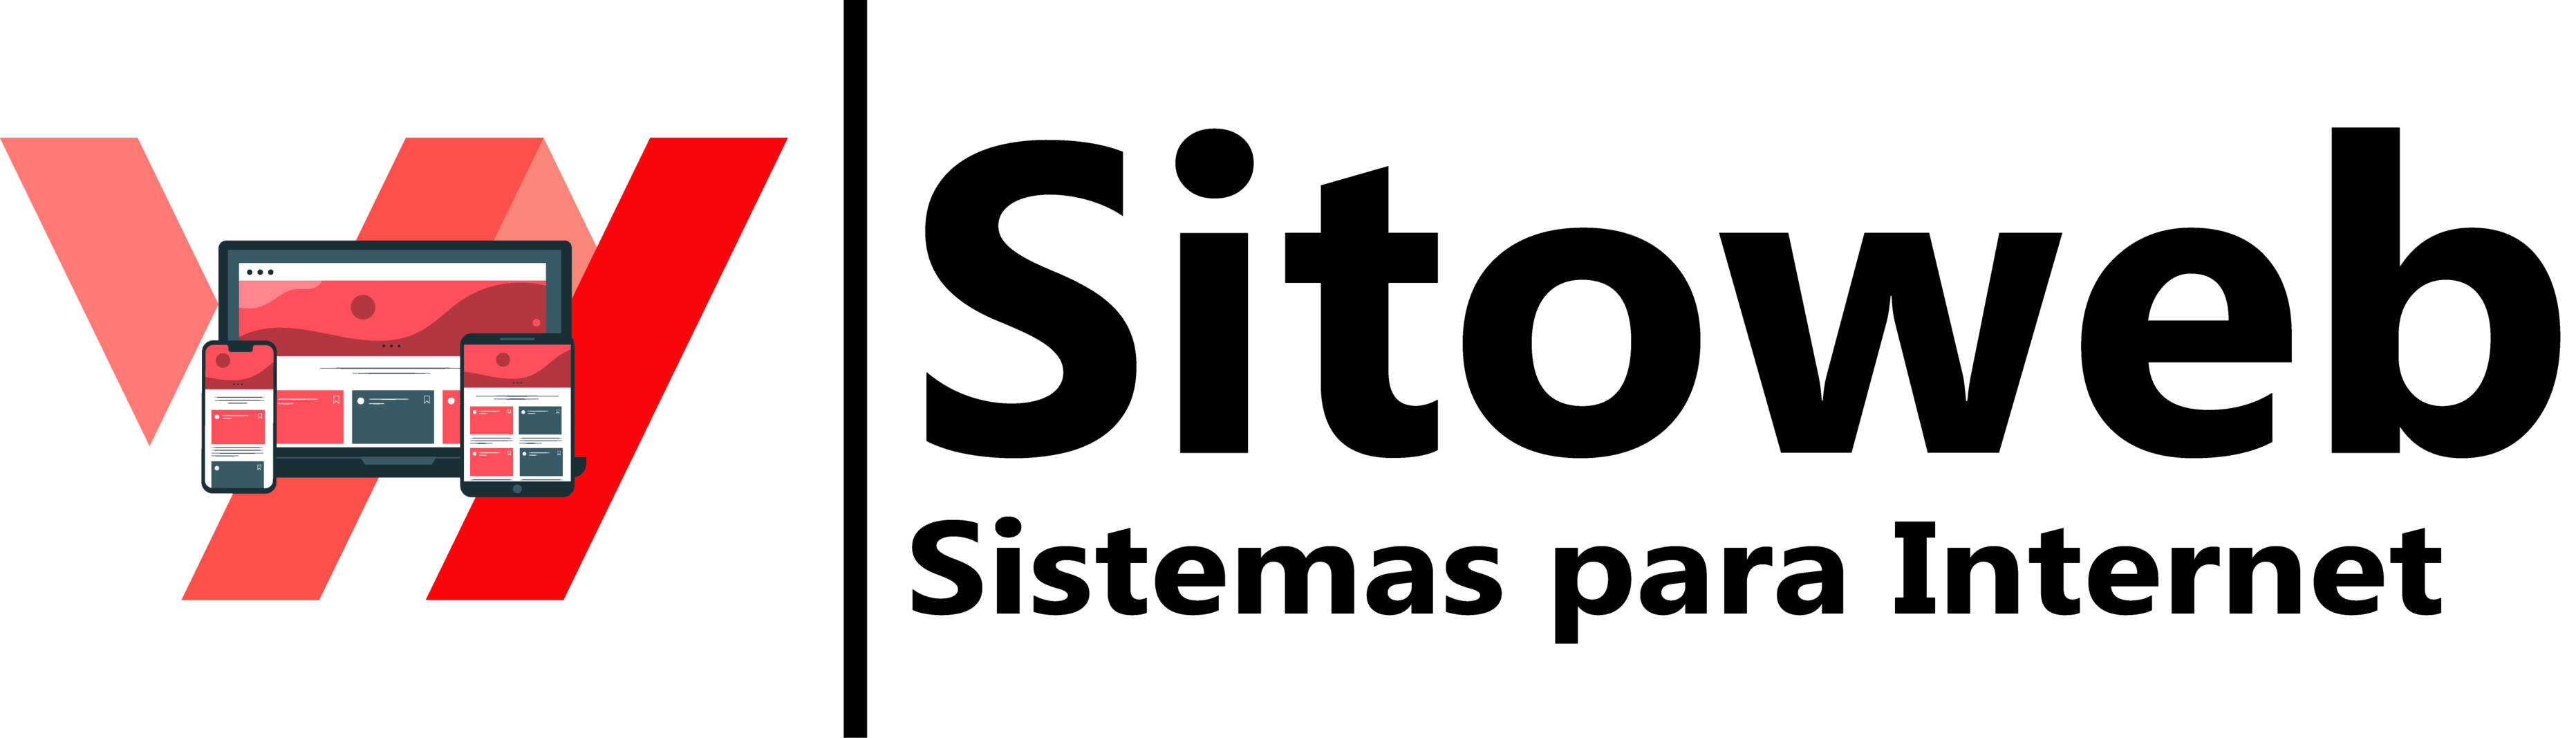 Sitoweb Sistemas para Internet